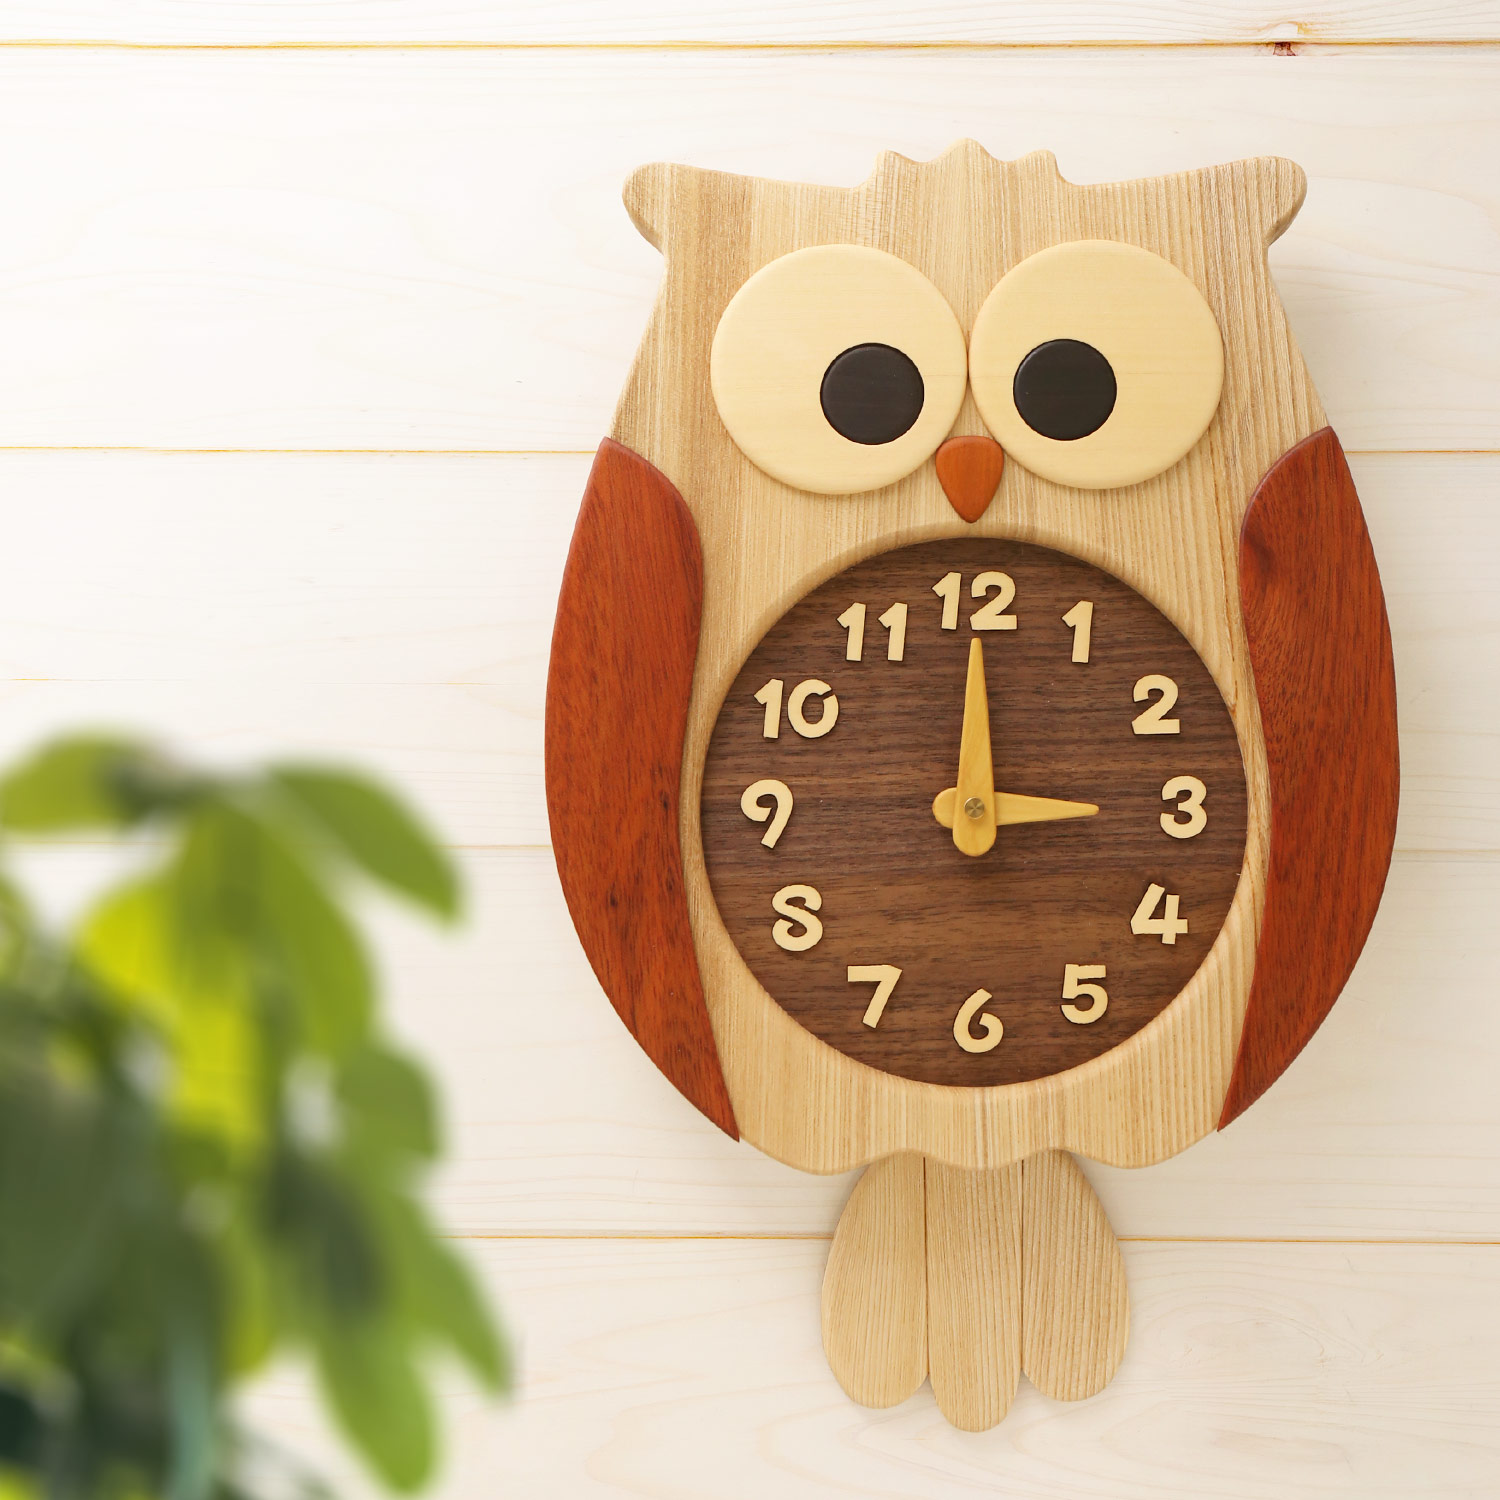 ふくろう掛け時計 壁掛け時計 おしゃれ かわいい 天然木 ふくろう 木製